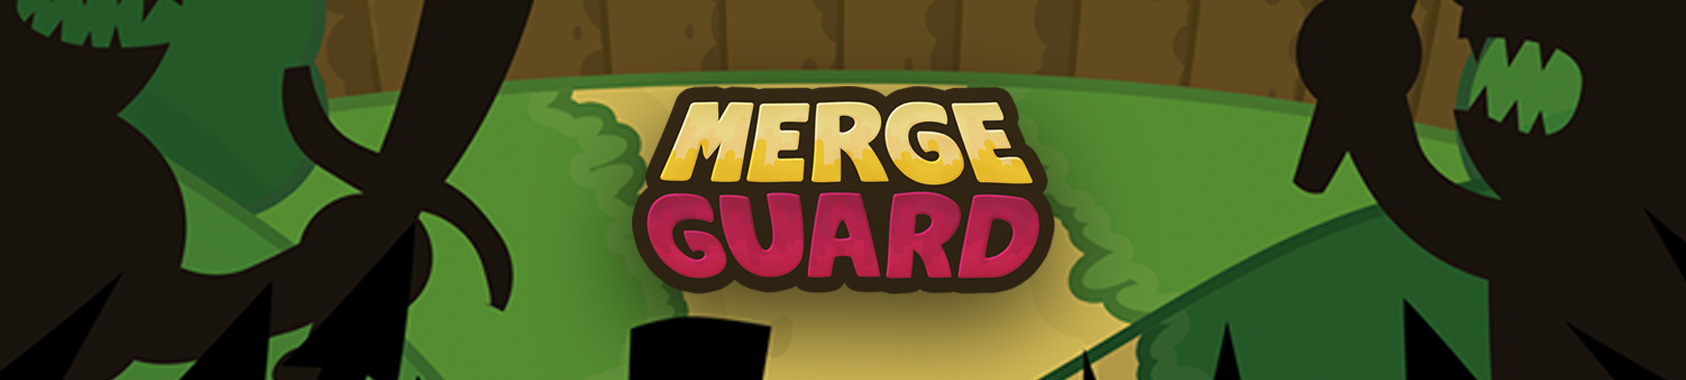 Merge Guard